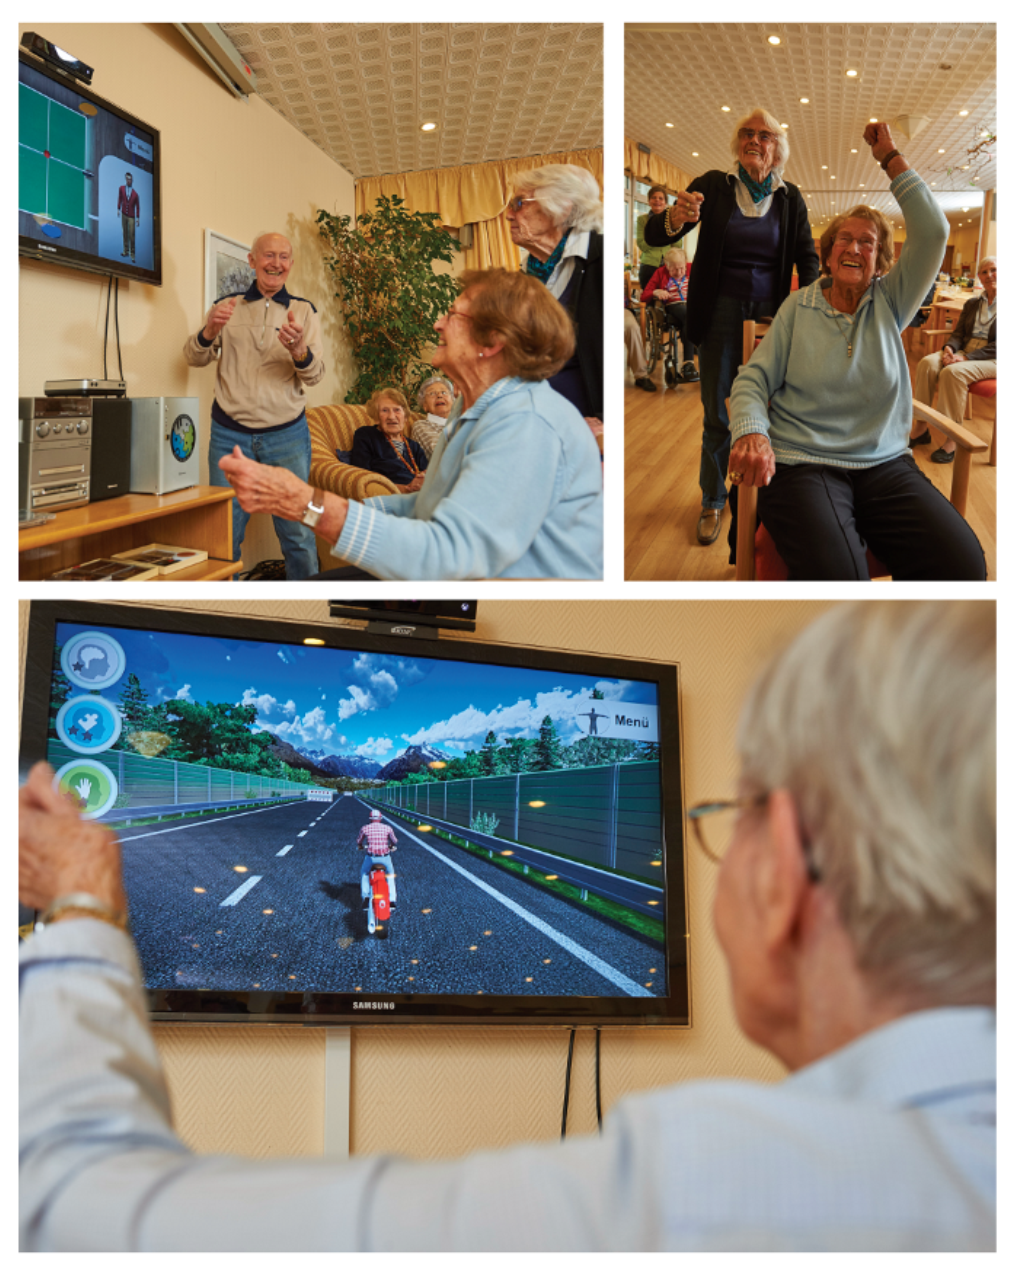 Fotocollage Senioren beim Videospielen